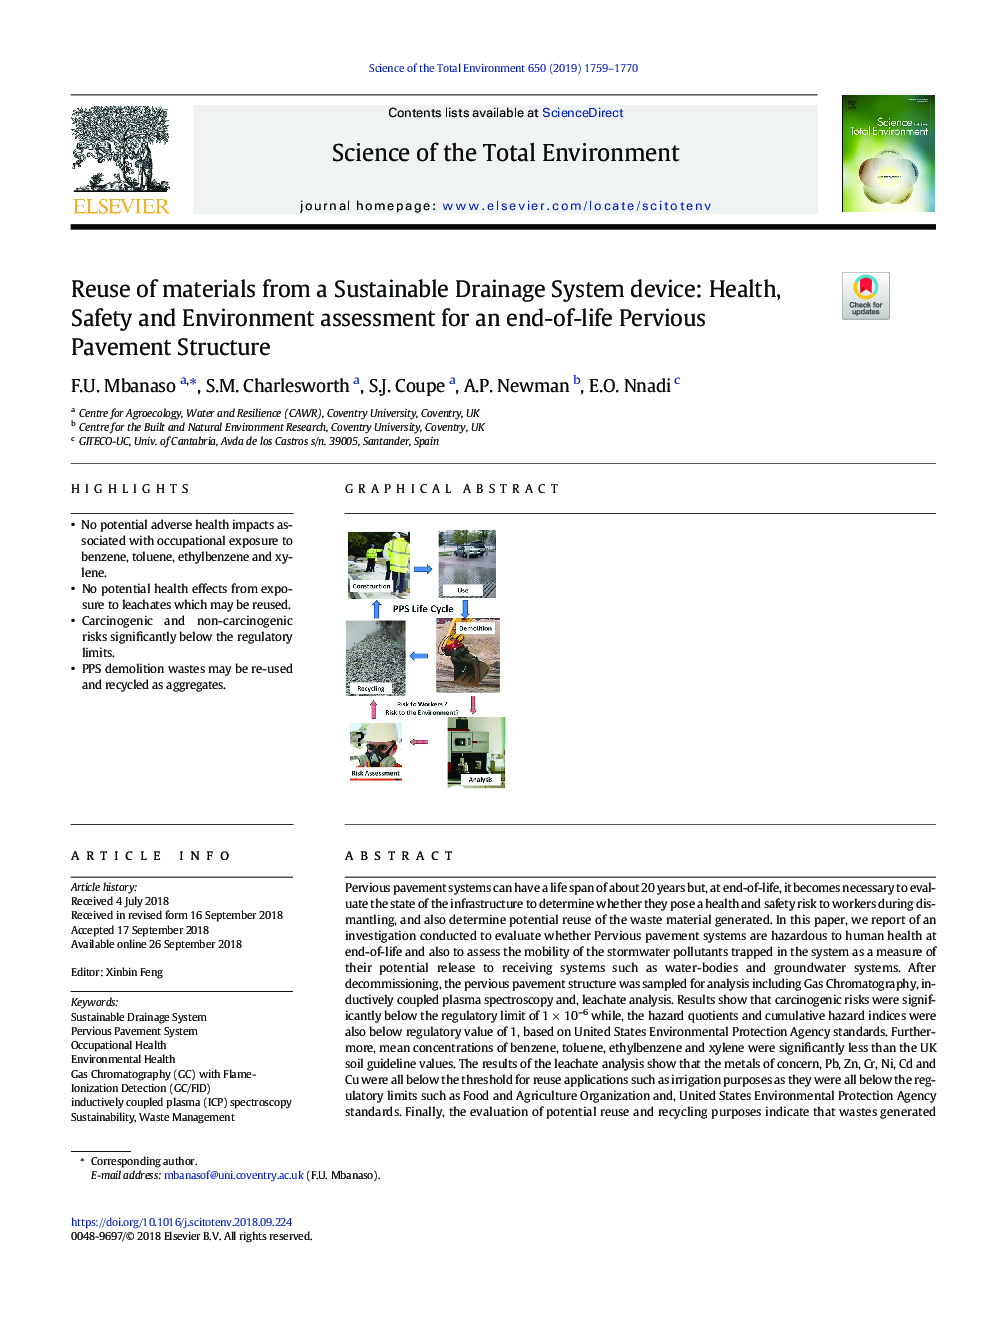 استفاده مجدد از مواد از یک سیستم سیستم زهکش پایدار: ارزیابی سلامت، ایمنی و محیط زیست برای عمر طولانی ساختار پوشش